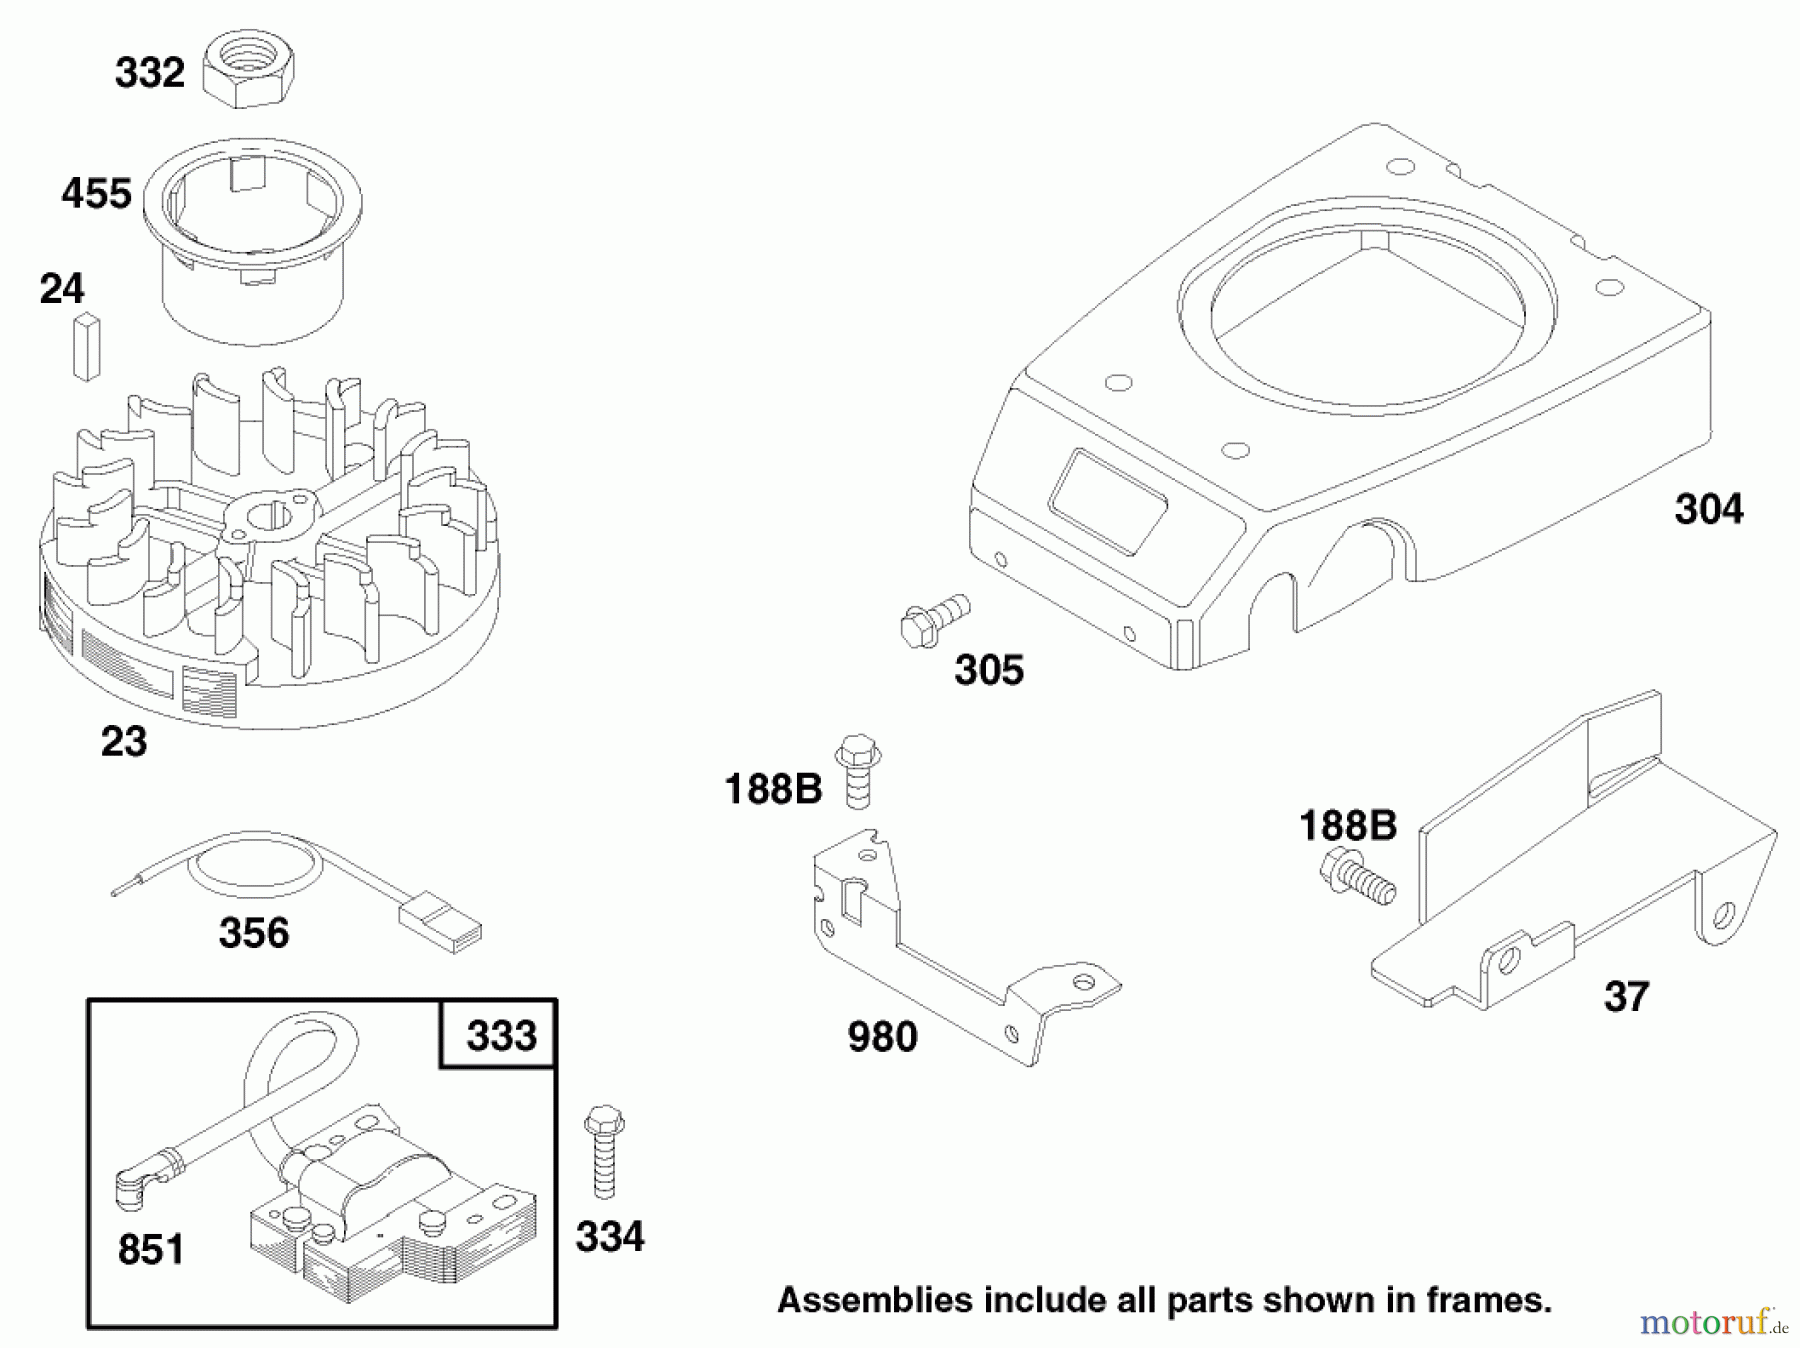  Toro Neu Mowers, Walk-Behind Seite 1 20482 - Toro Super Recycler Mower, 1997 (790000001-799999999) ENGINE GTS 150 (MODEL NO. 20482 ONLY) #5